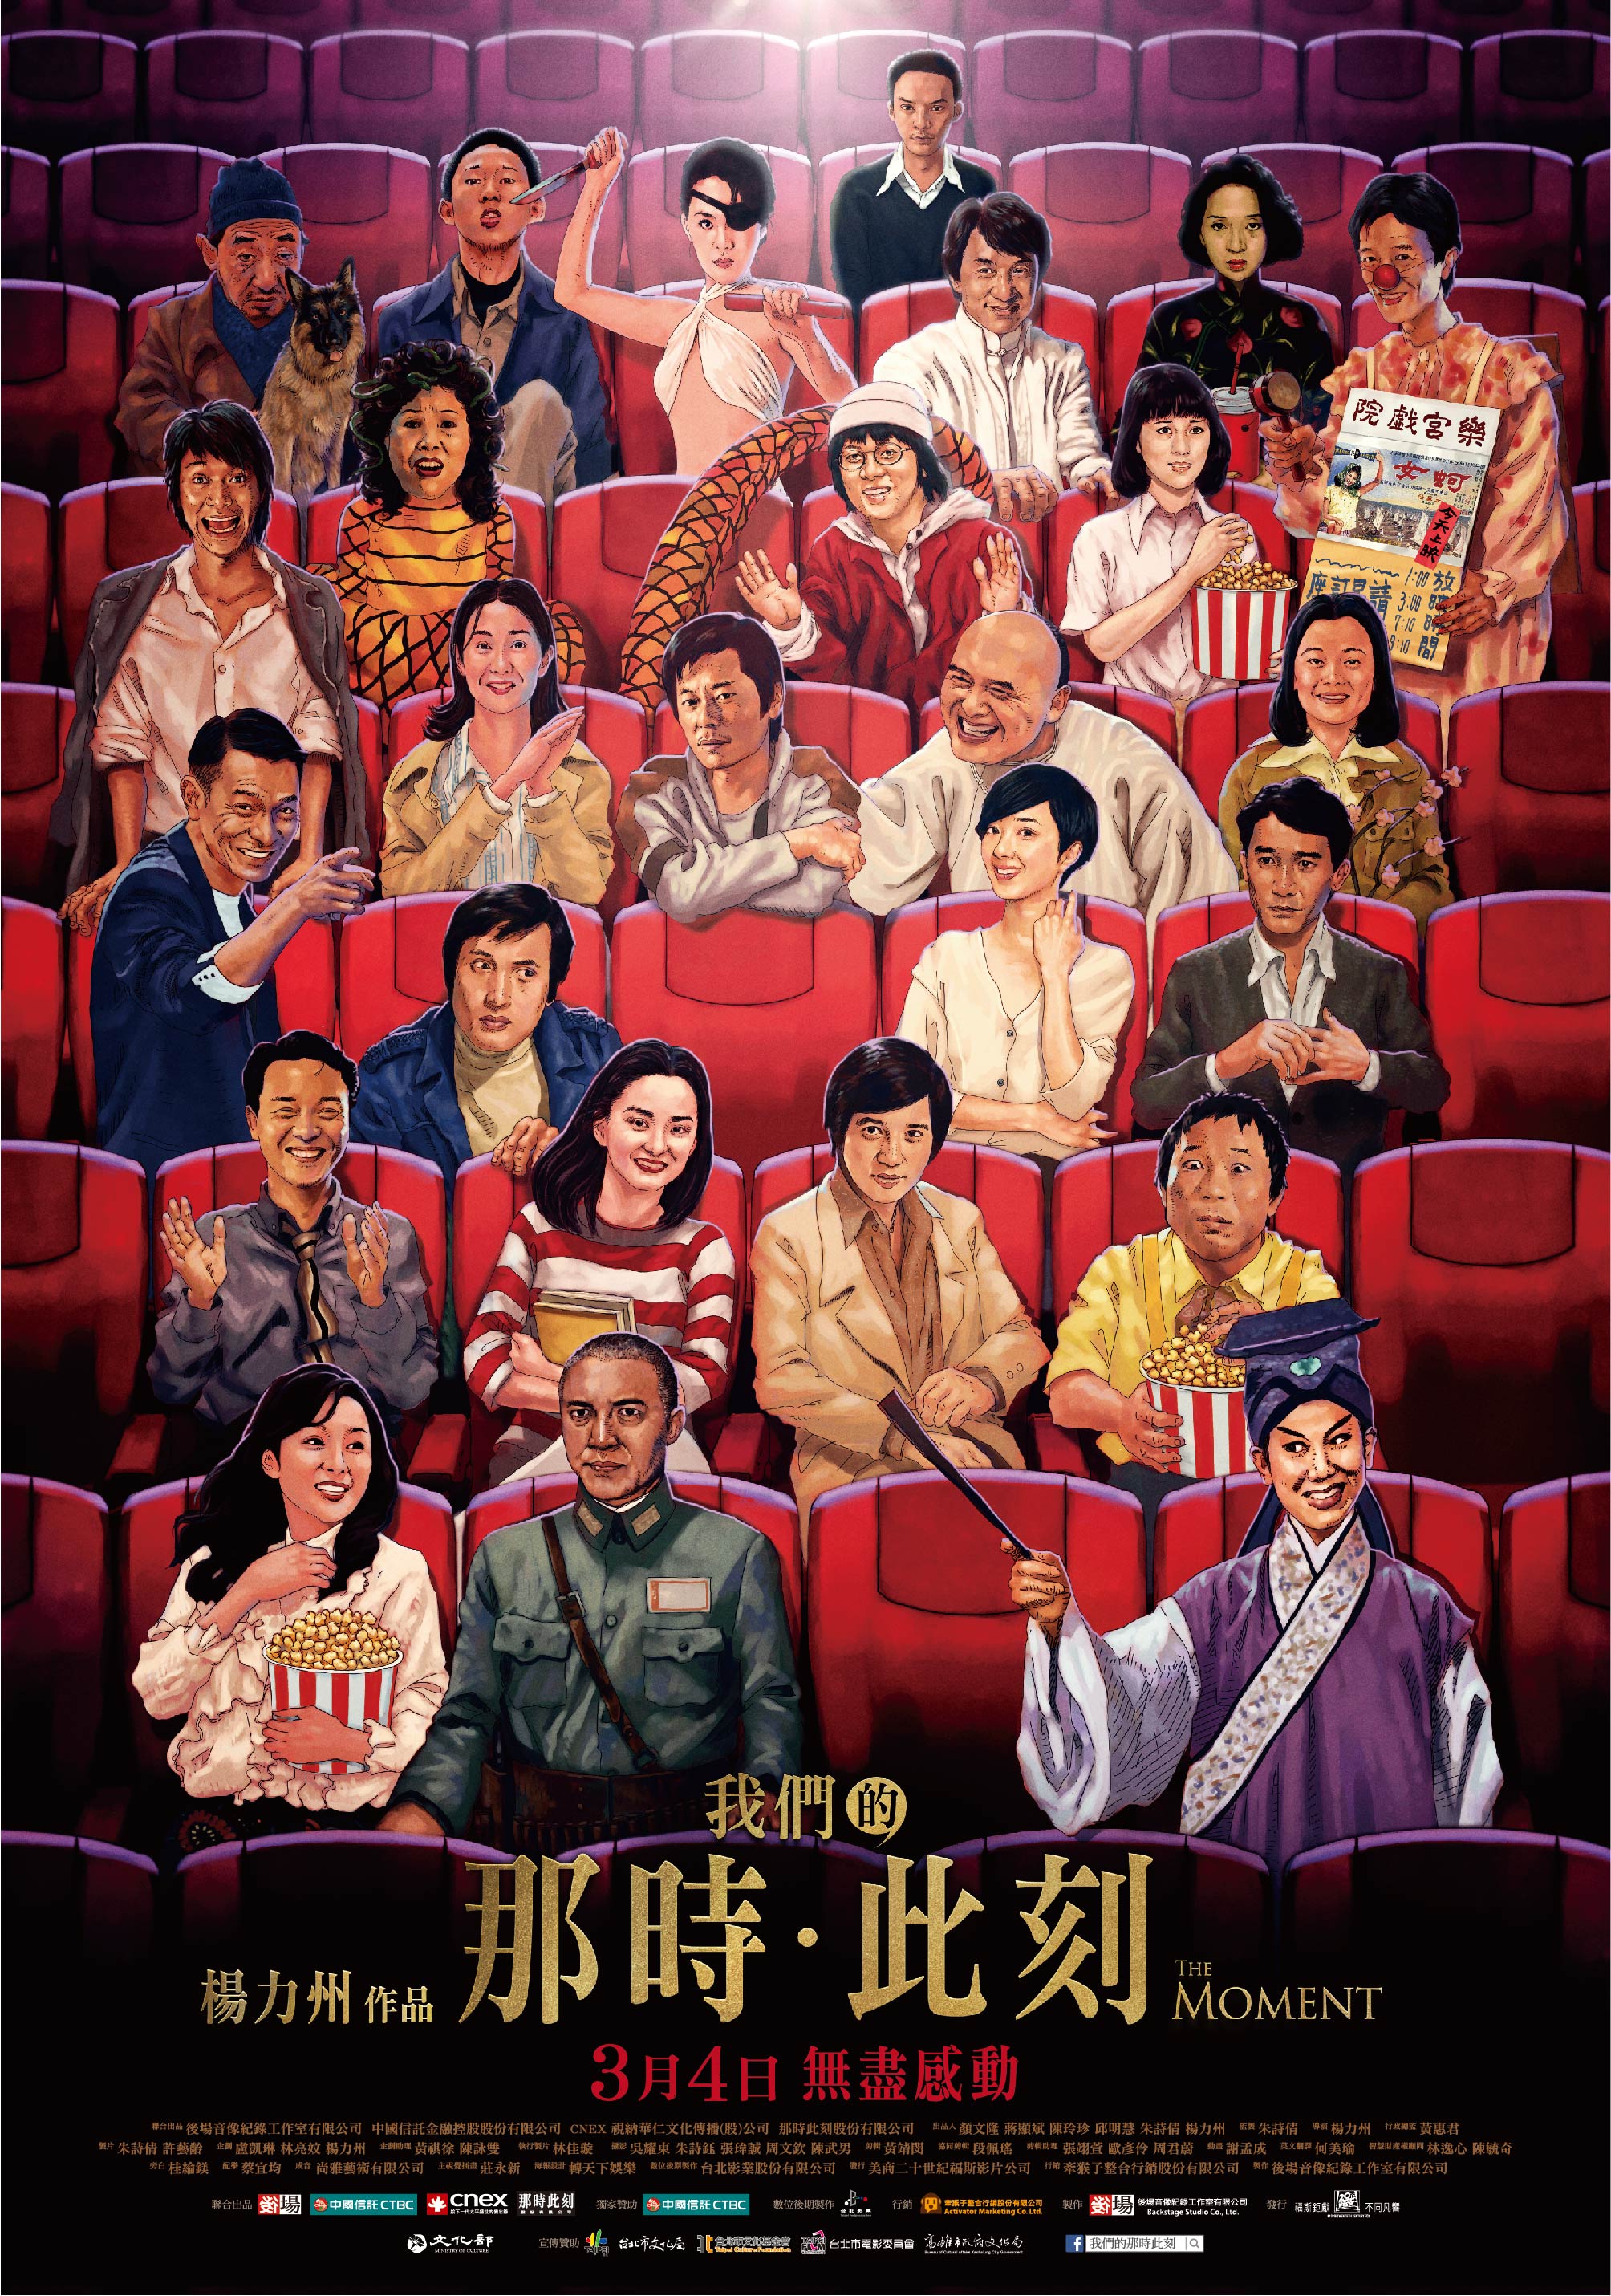 走過台灣電影半世紀_《我們的那時此刻》導演楊力州帶領影迷找回被遺忘的初衷_我們的那時此刻-正式海報.jpg